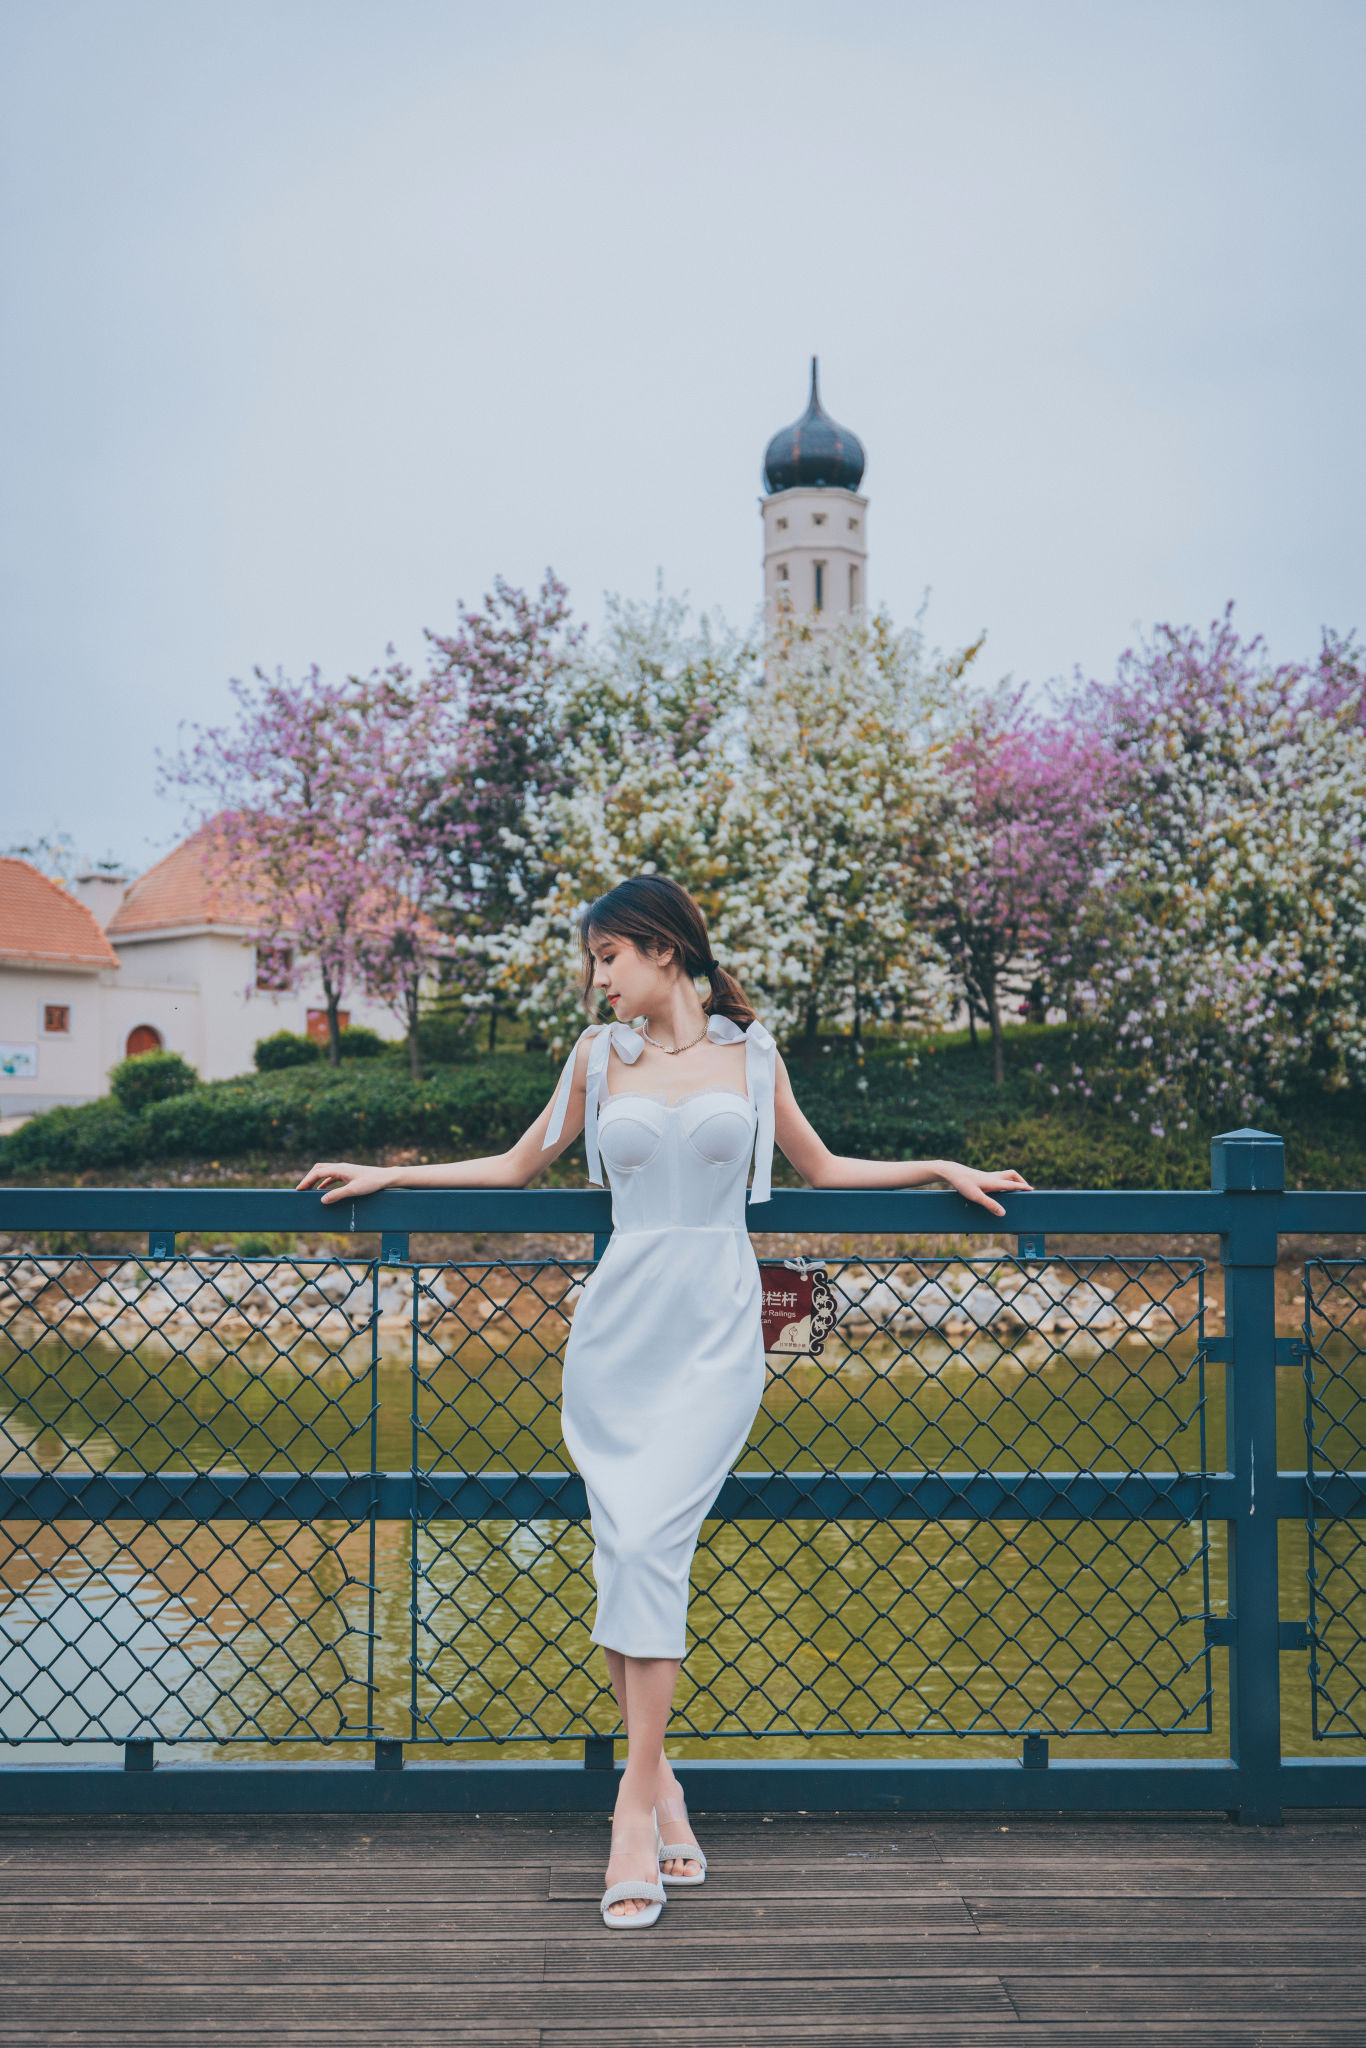 Qin Xiaoqiang Women Brunette Dress White Clothing Fence Bridge Spring 1366x2048